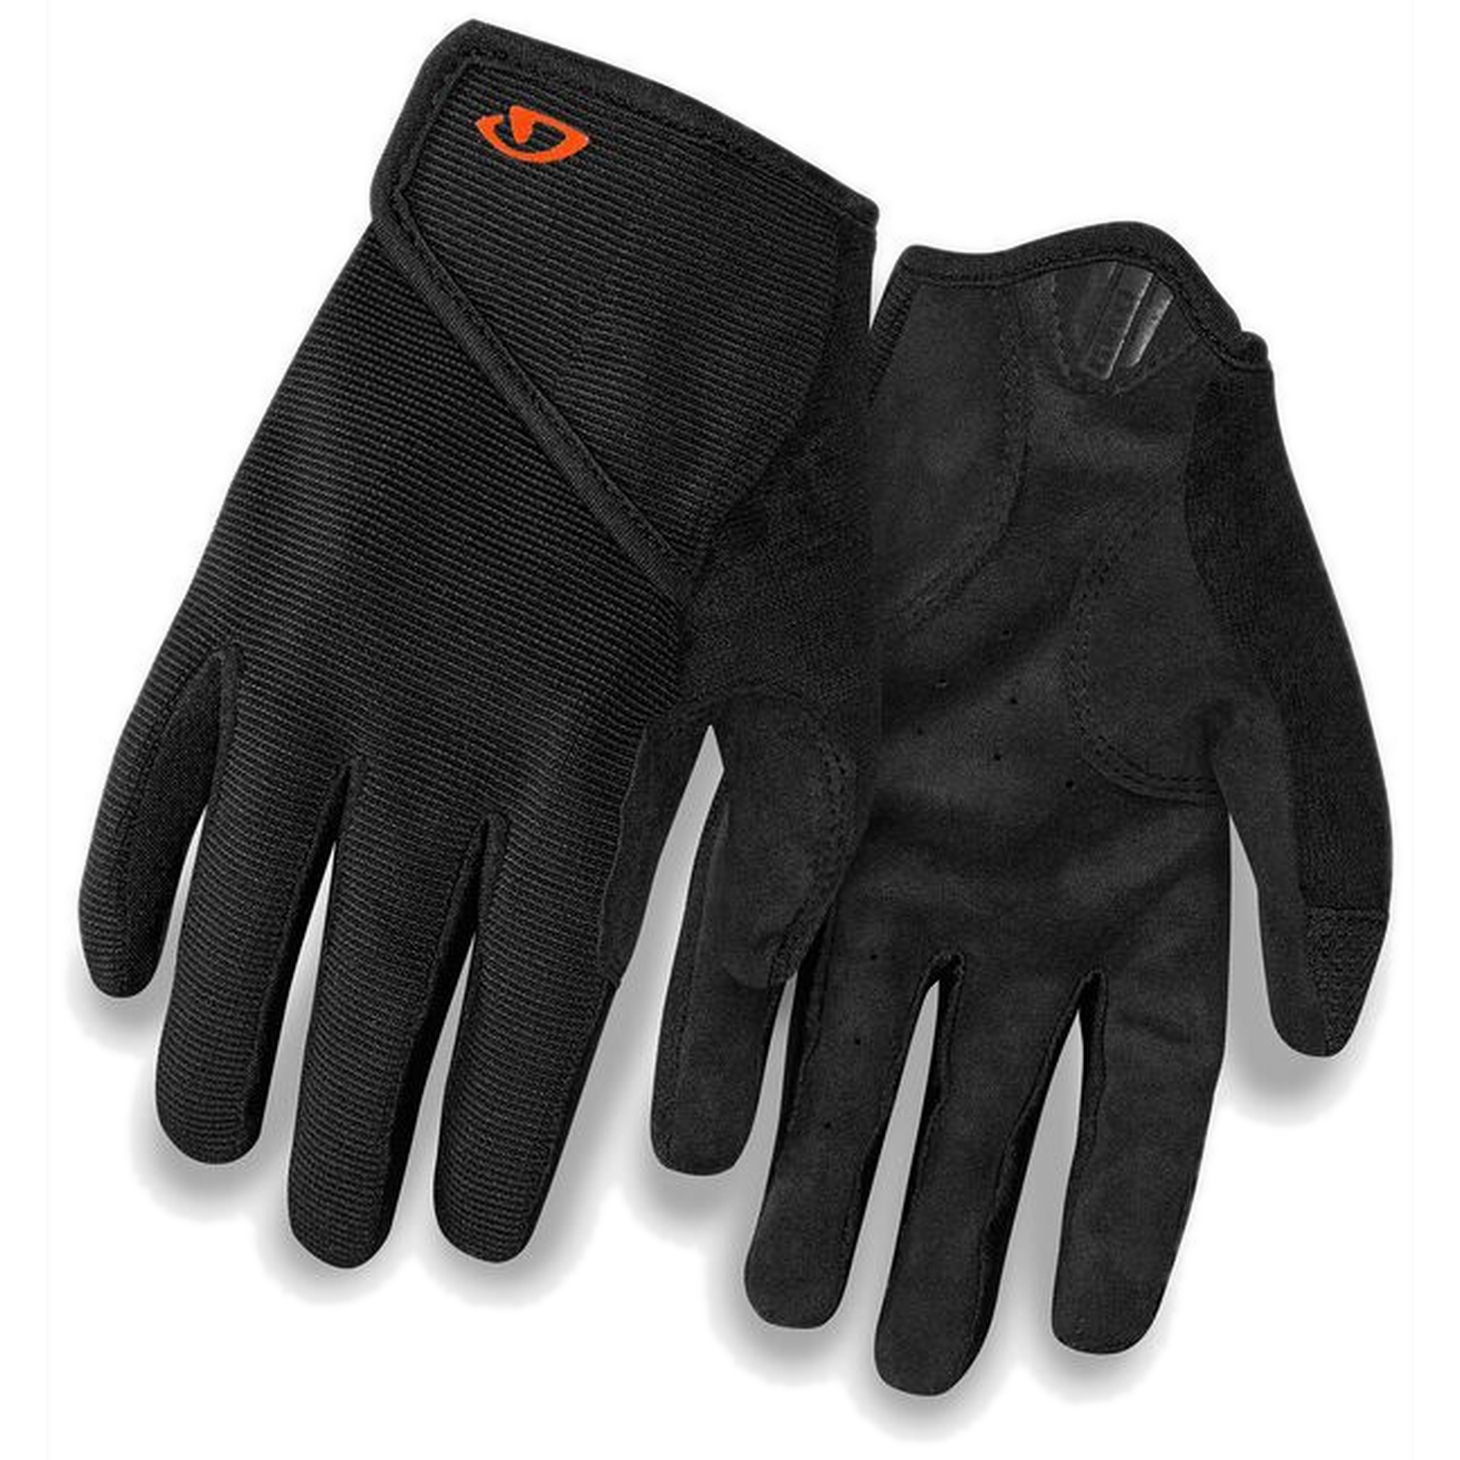 Produktbild von Giro DND Junior II Kinder Handschuh - black